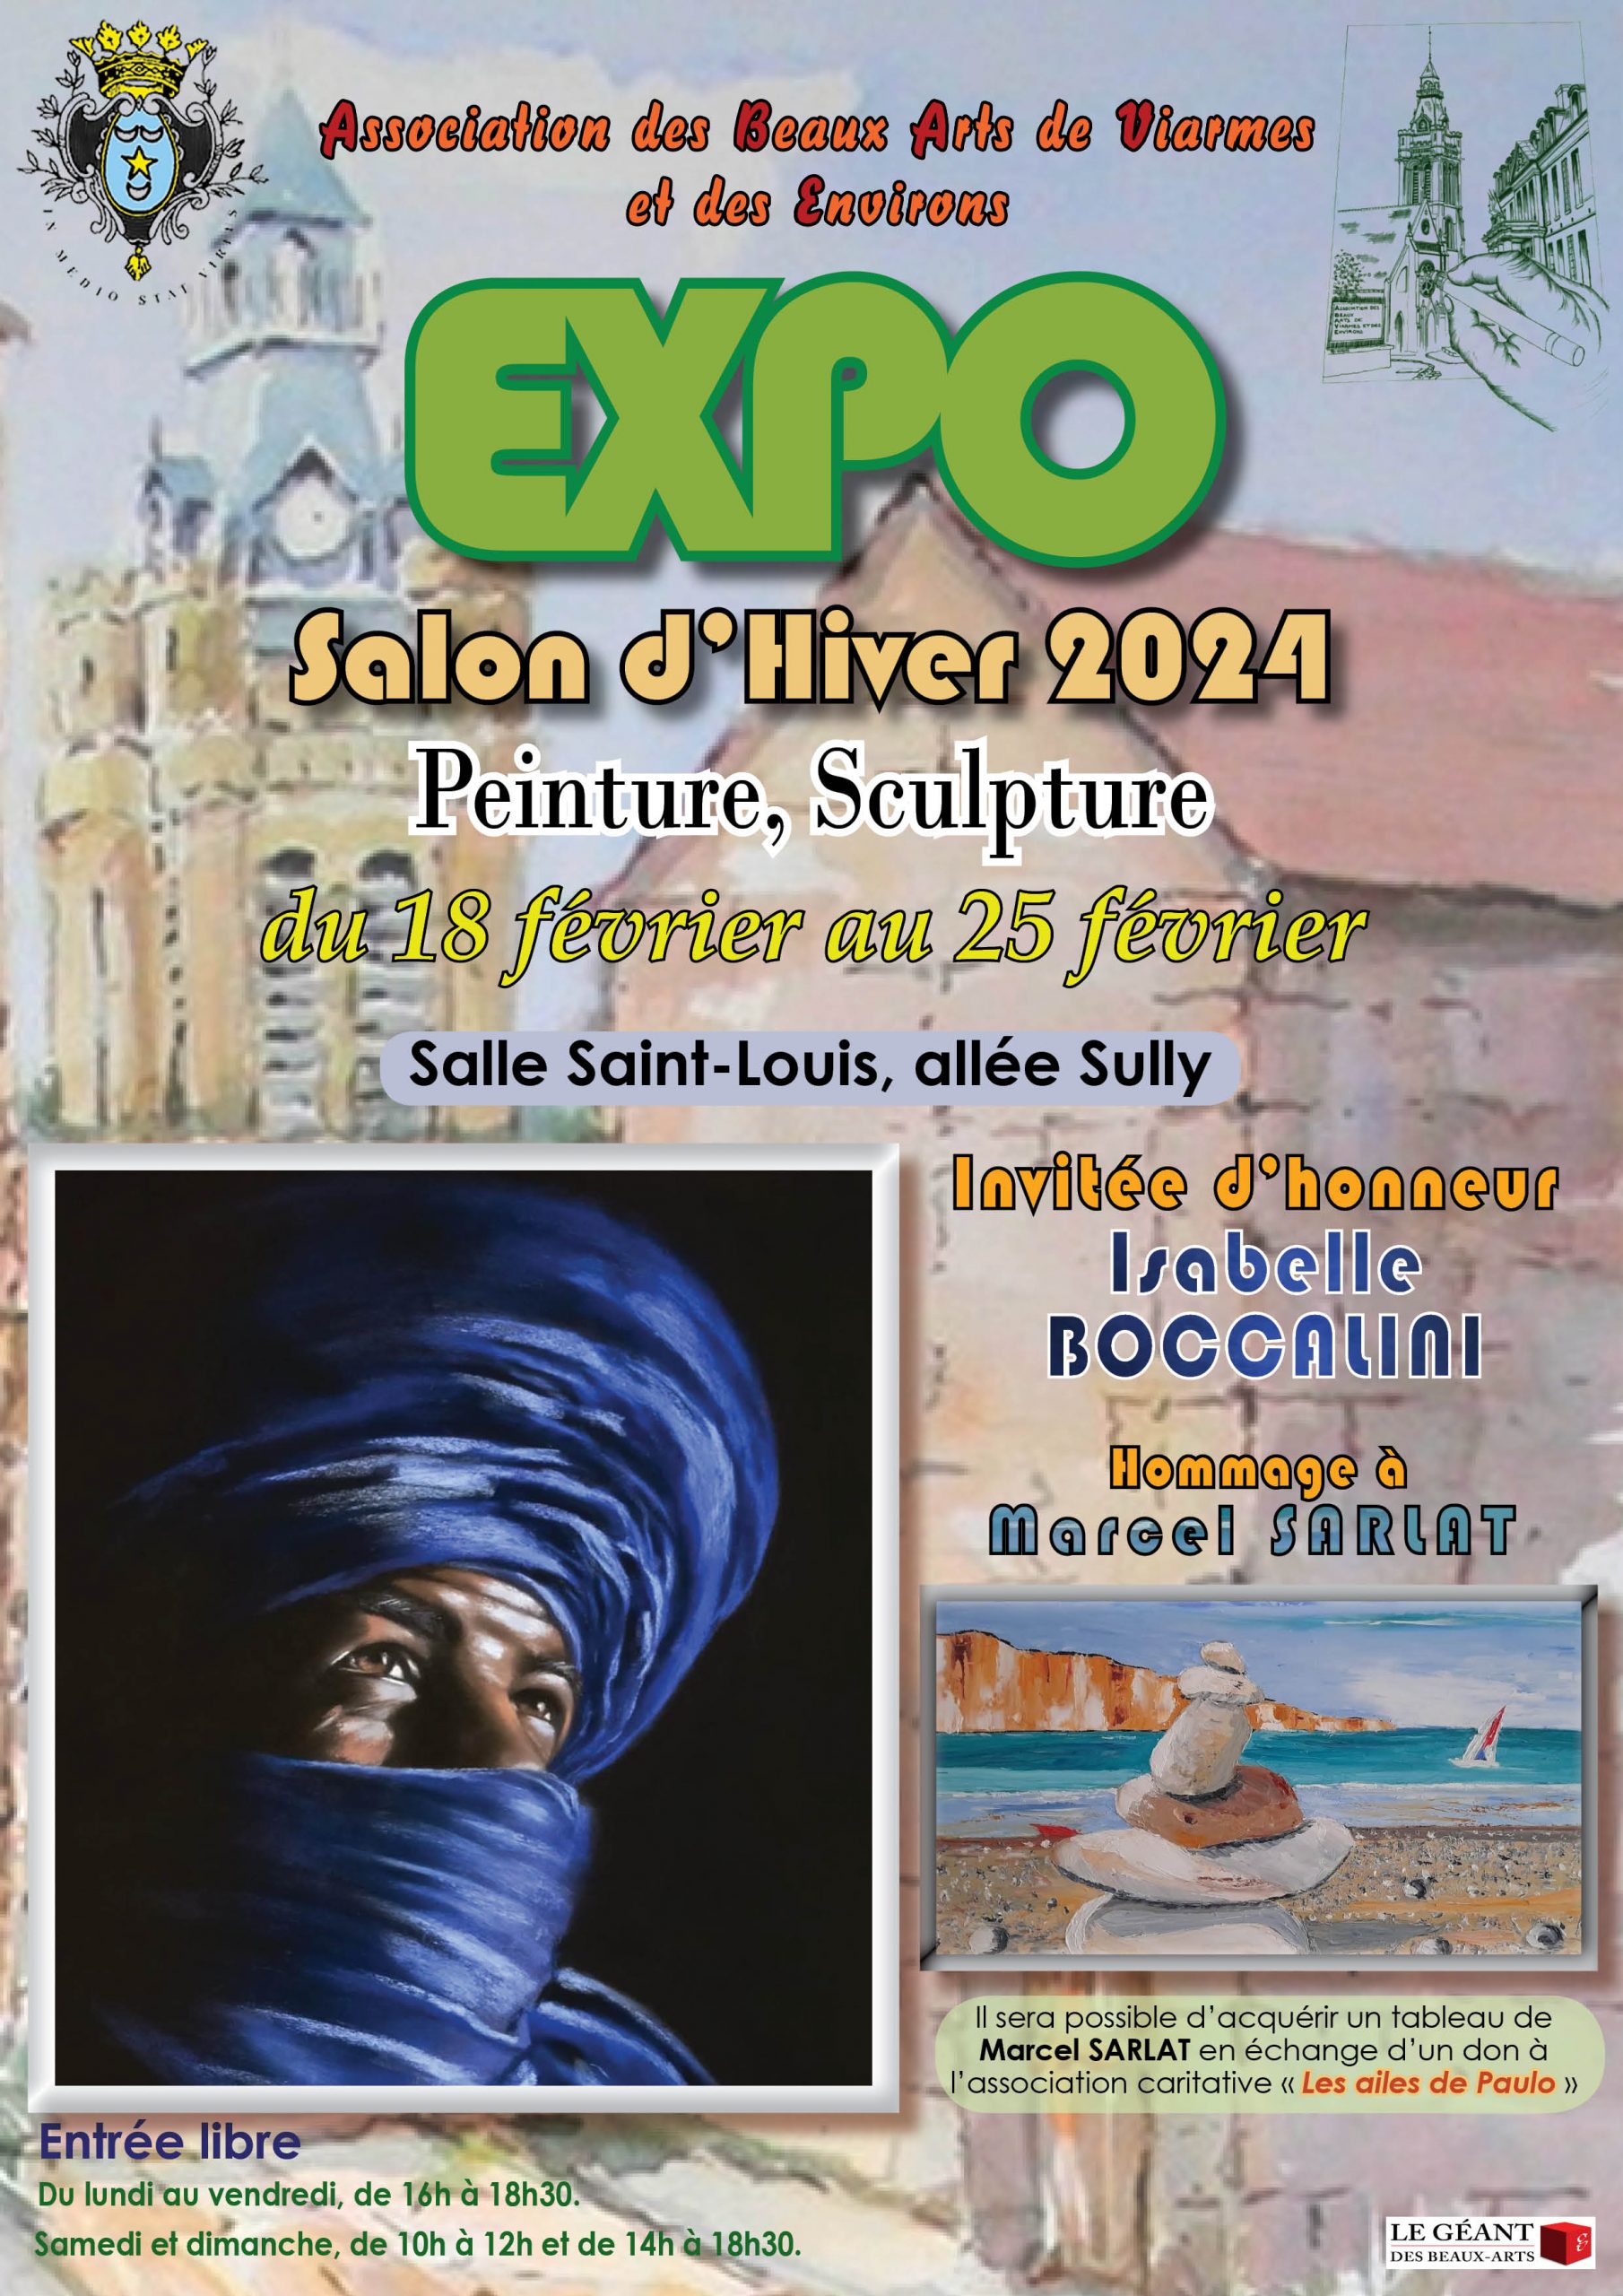 Exposition salon d'hiver 2024 - ABAVE VIARMES